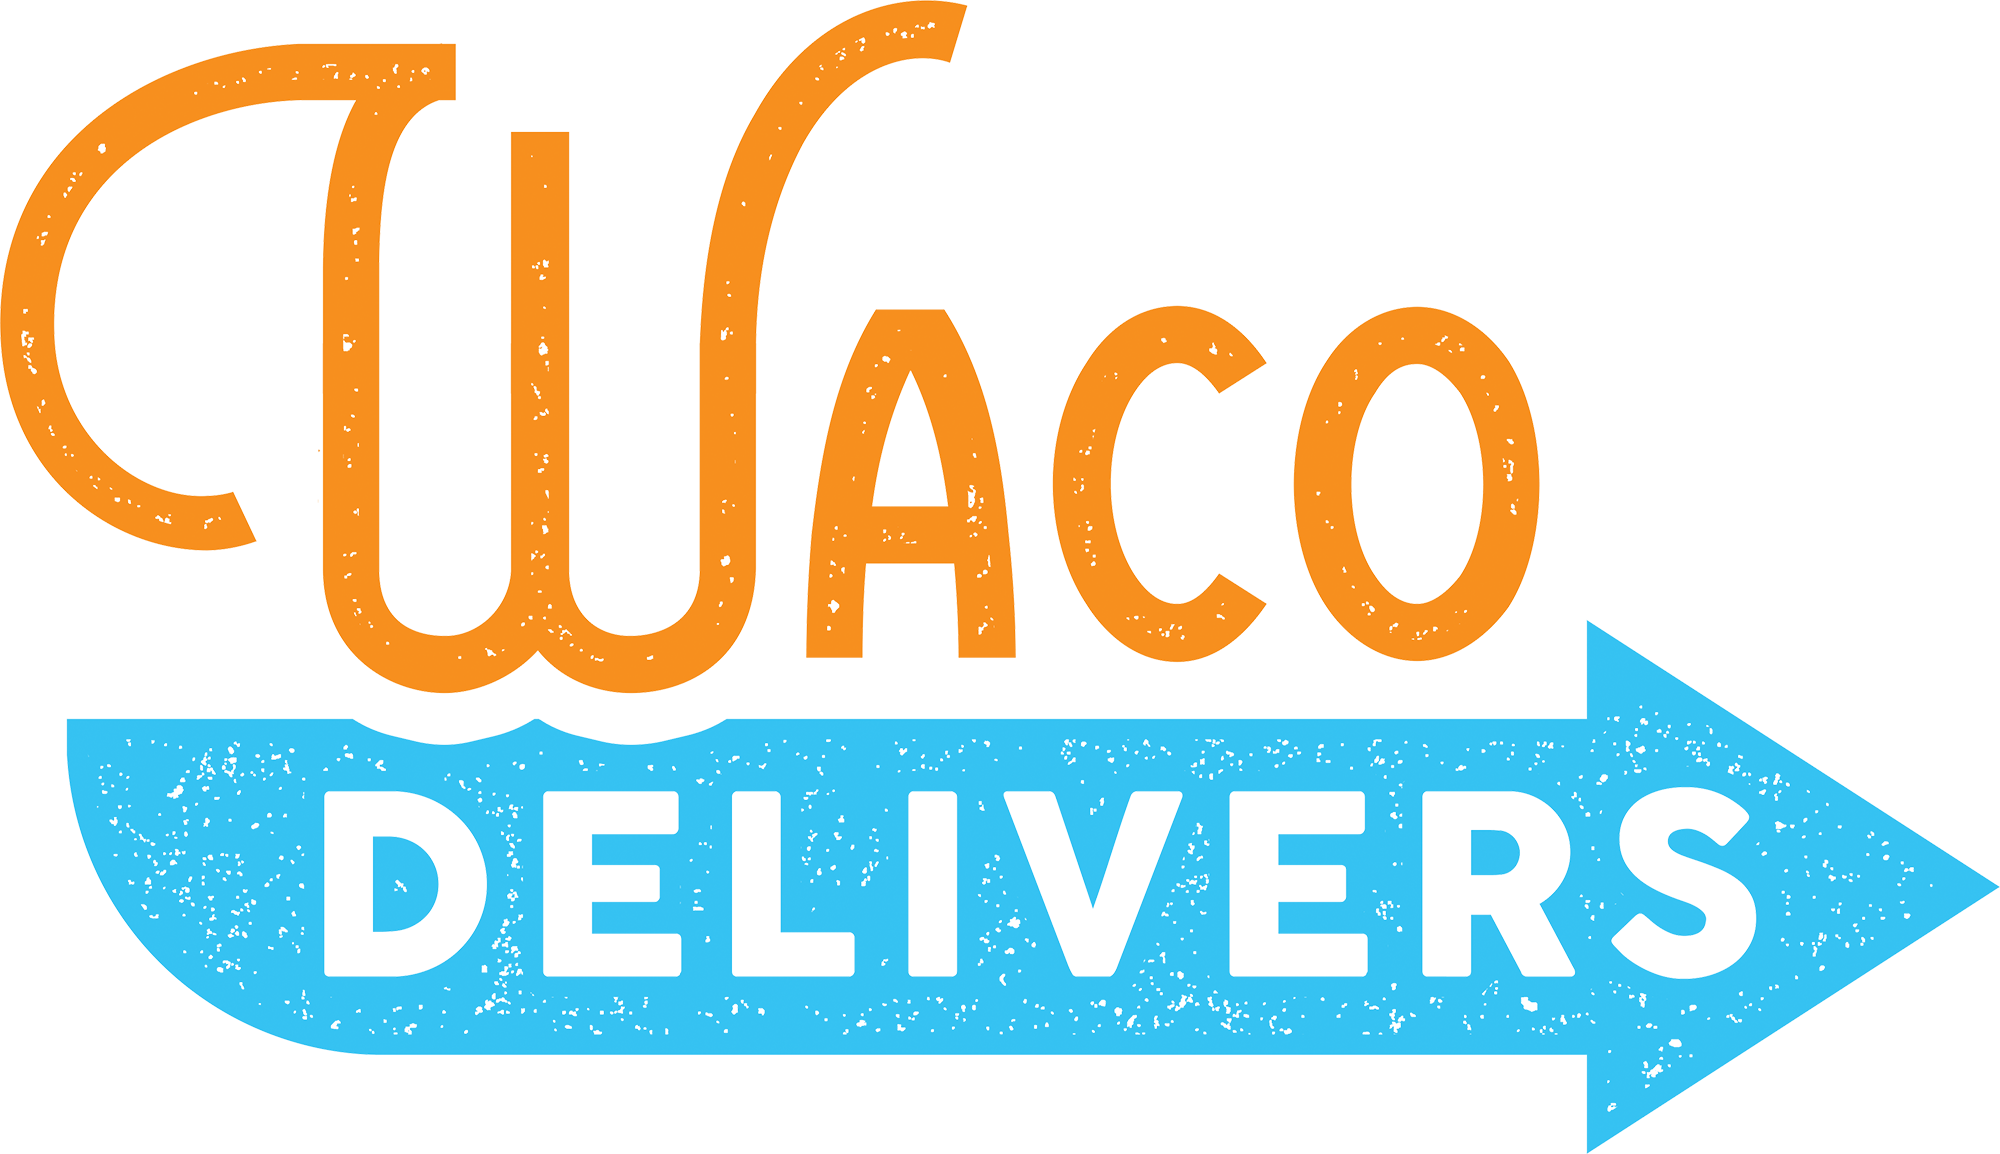 Waco Delivers